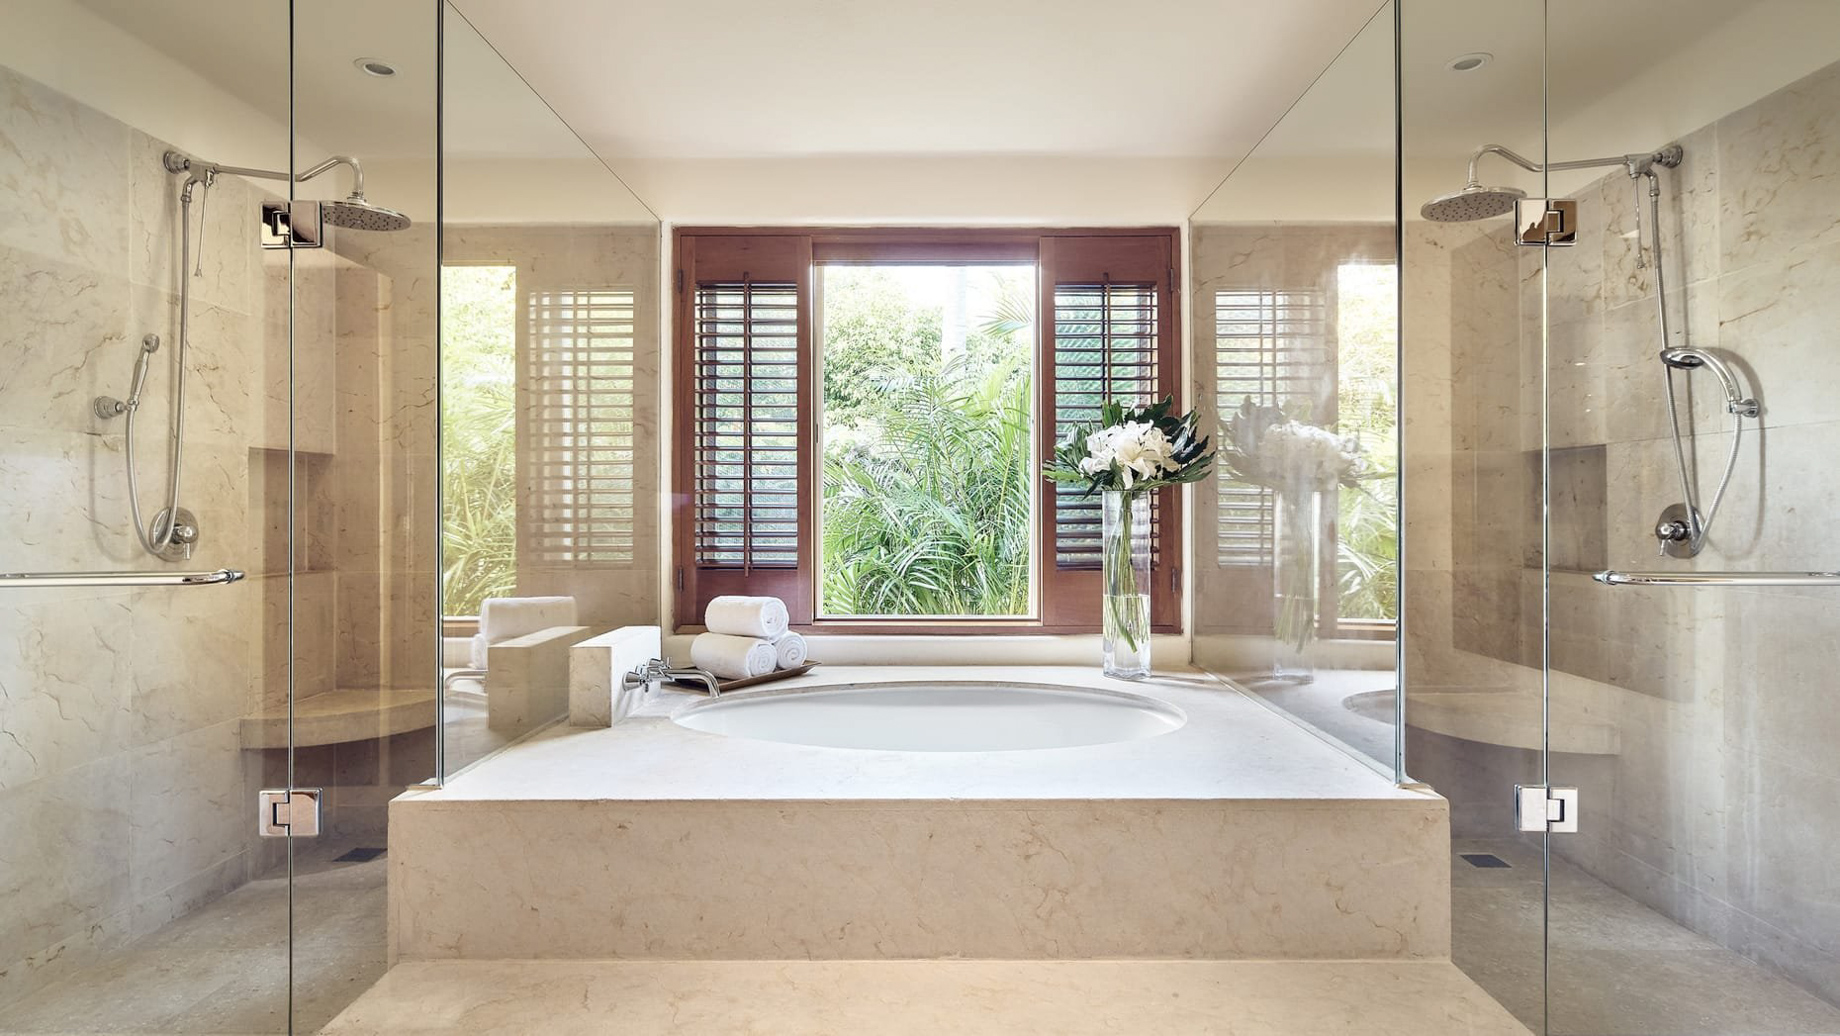 Four Seasons Resort Punta Mita – Nayarit, Mexico – Invierno Ocean Villa Bathroom